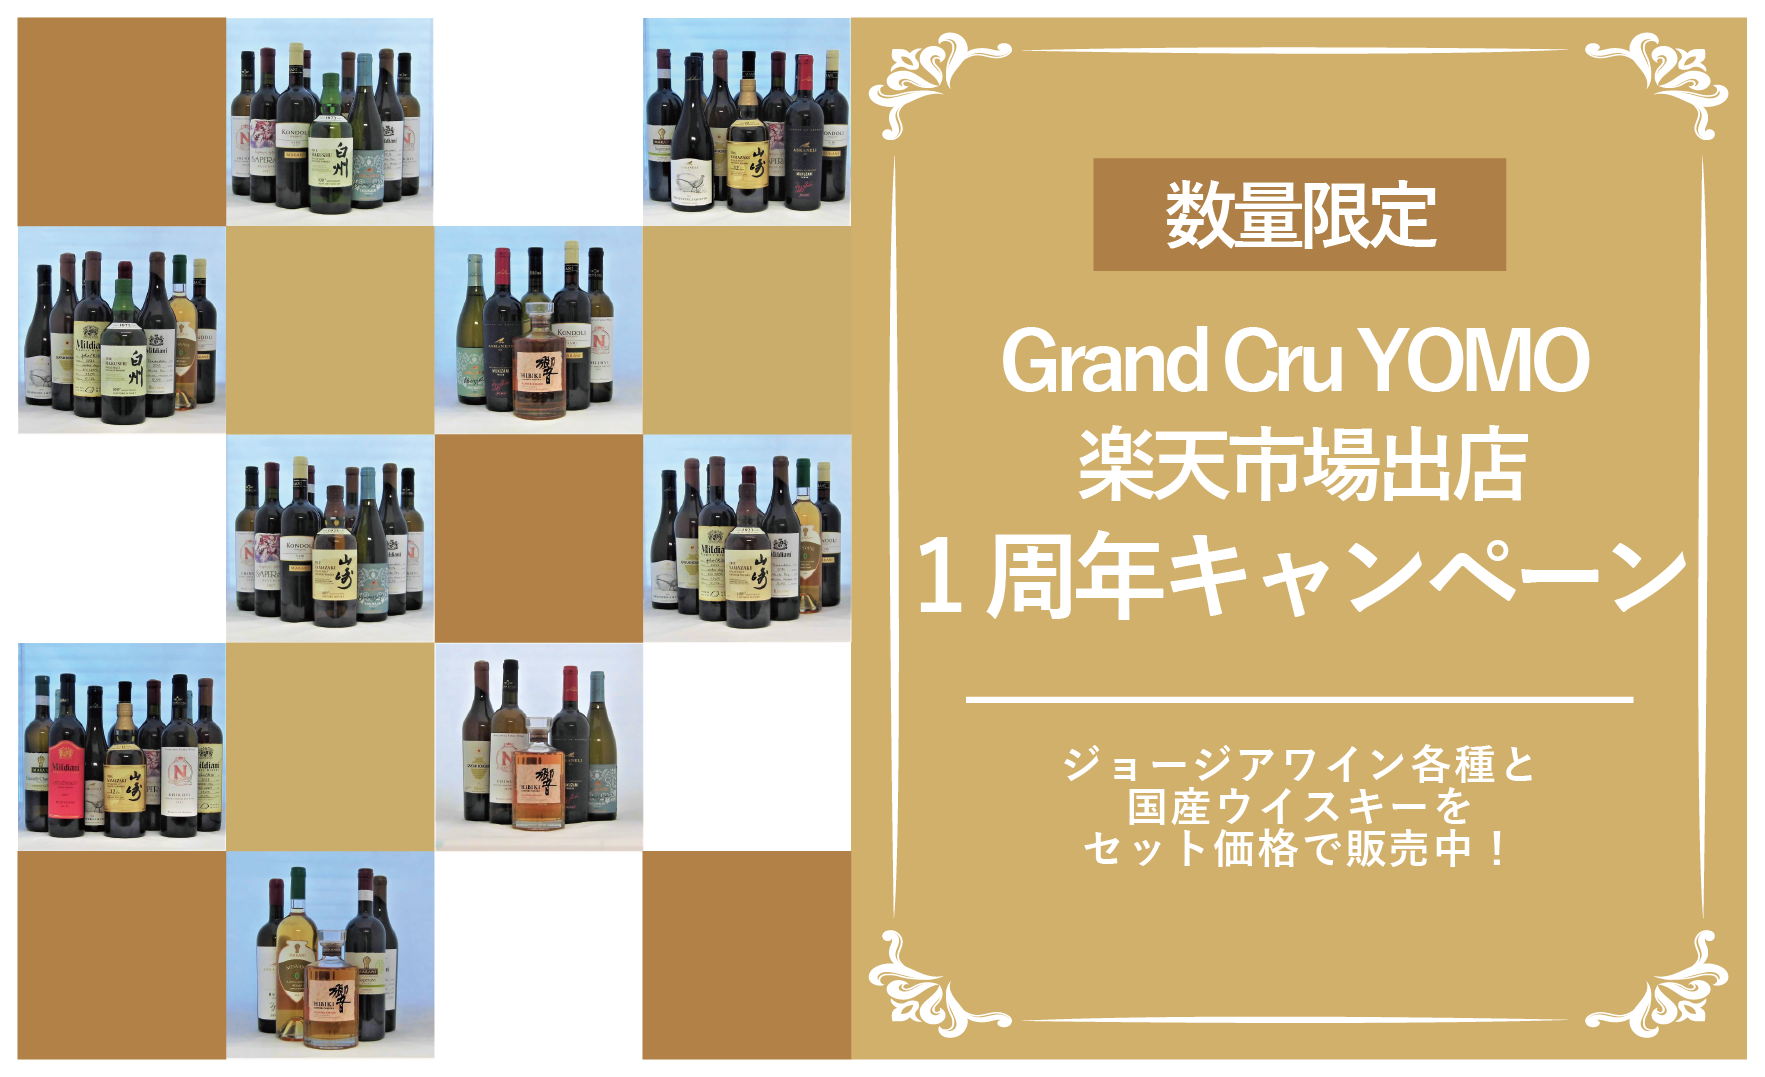 Grand Cru YOMO 楽天市場出店1周年キャンペーン